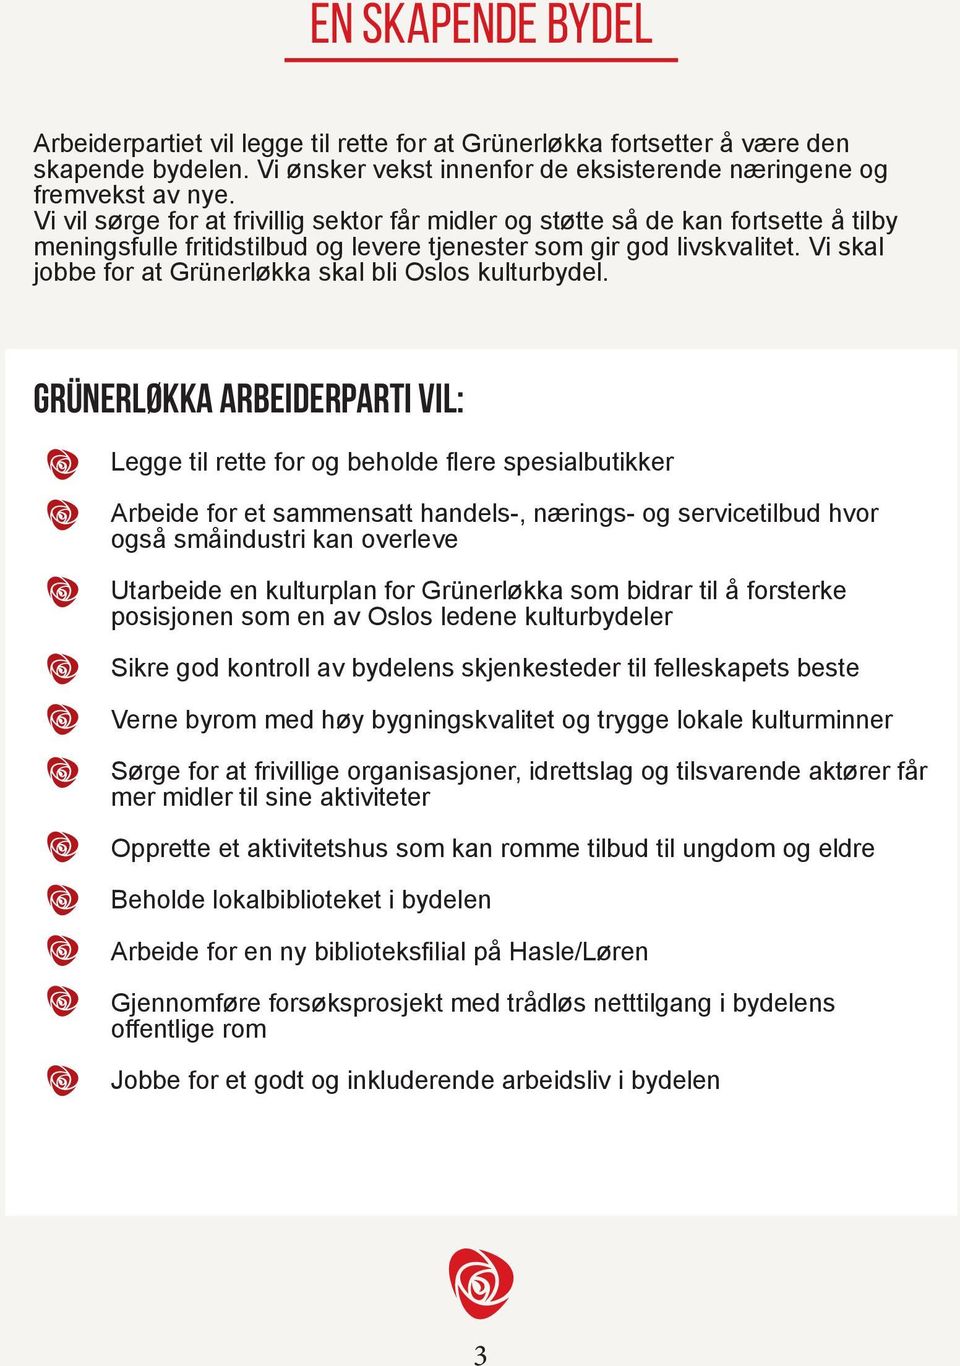 Vi skal jobbe for at Grünerløkka skal bli Oslos kulturbydel.